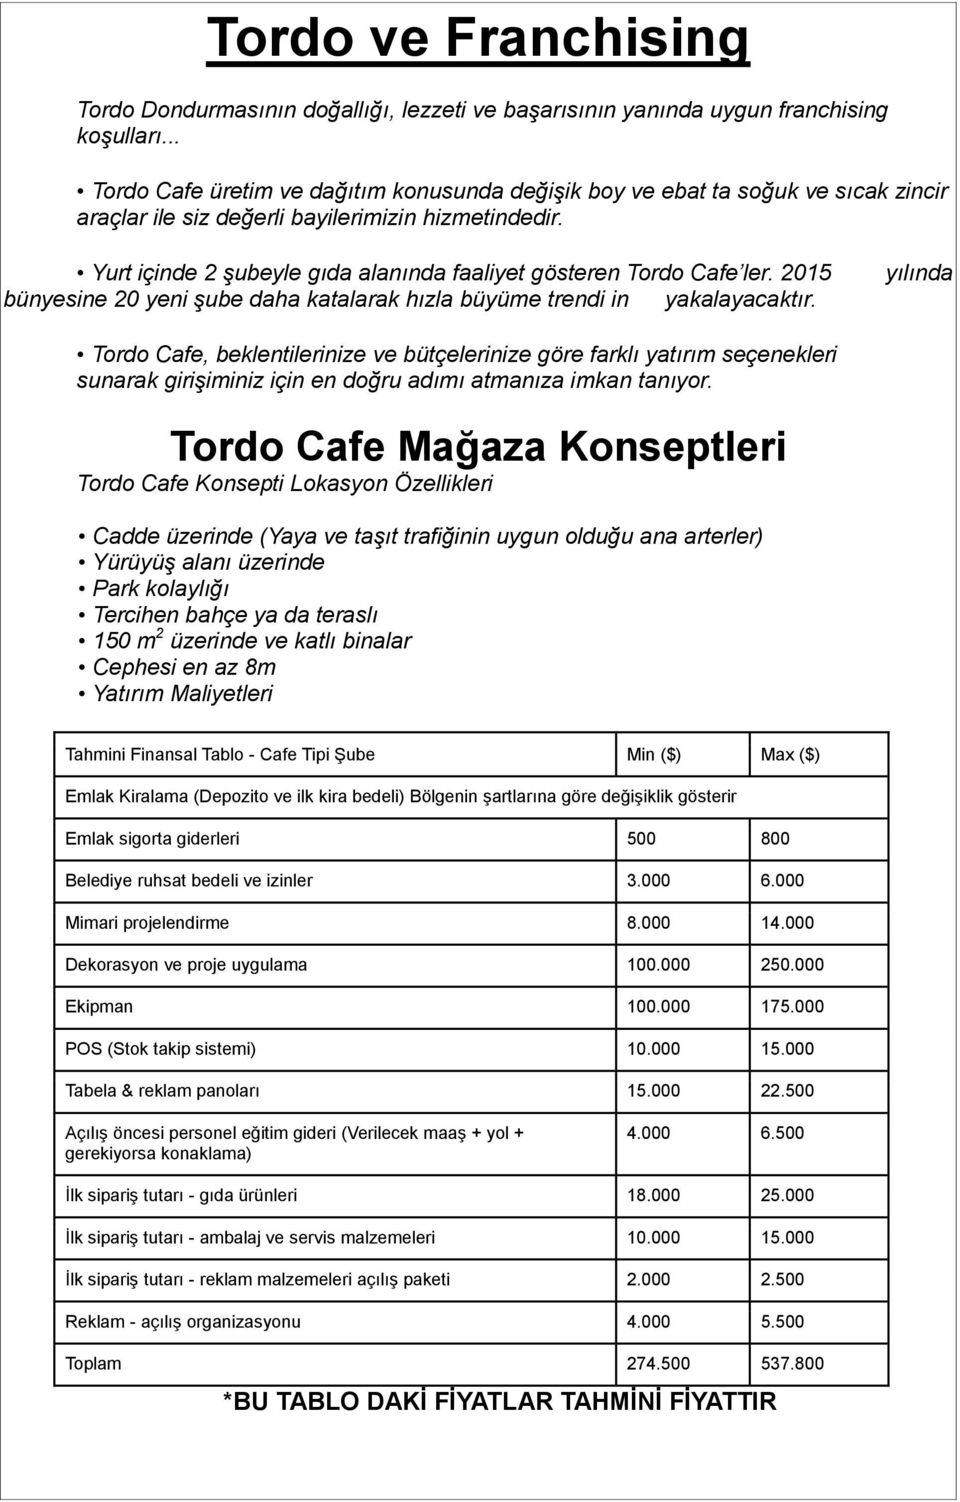 Yurt içinde 2 şubeyle gıda alanında faaliyet gösteren Tordo Cafe ler. 2015 bünyesine 20 yeni şube daha katalarak hızla büyüme trendi in yakalayacaktır.